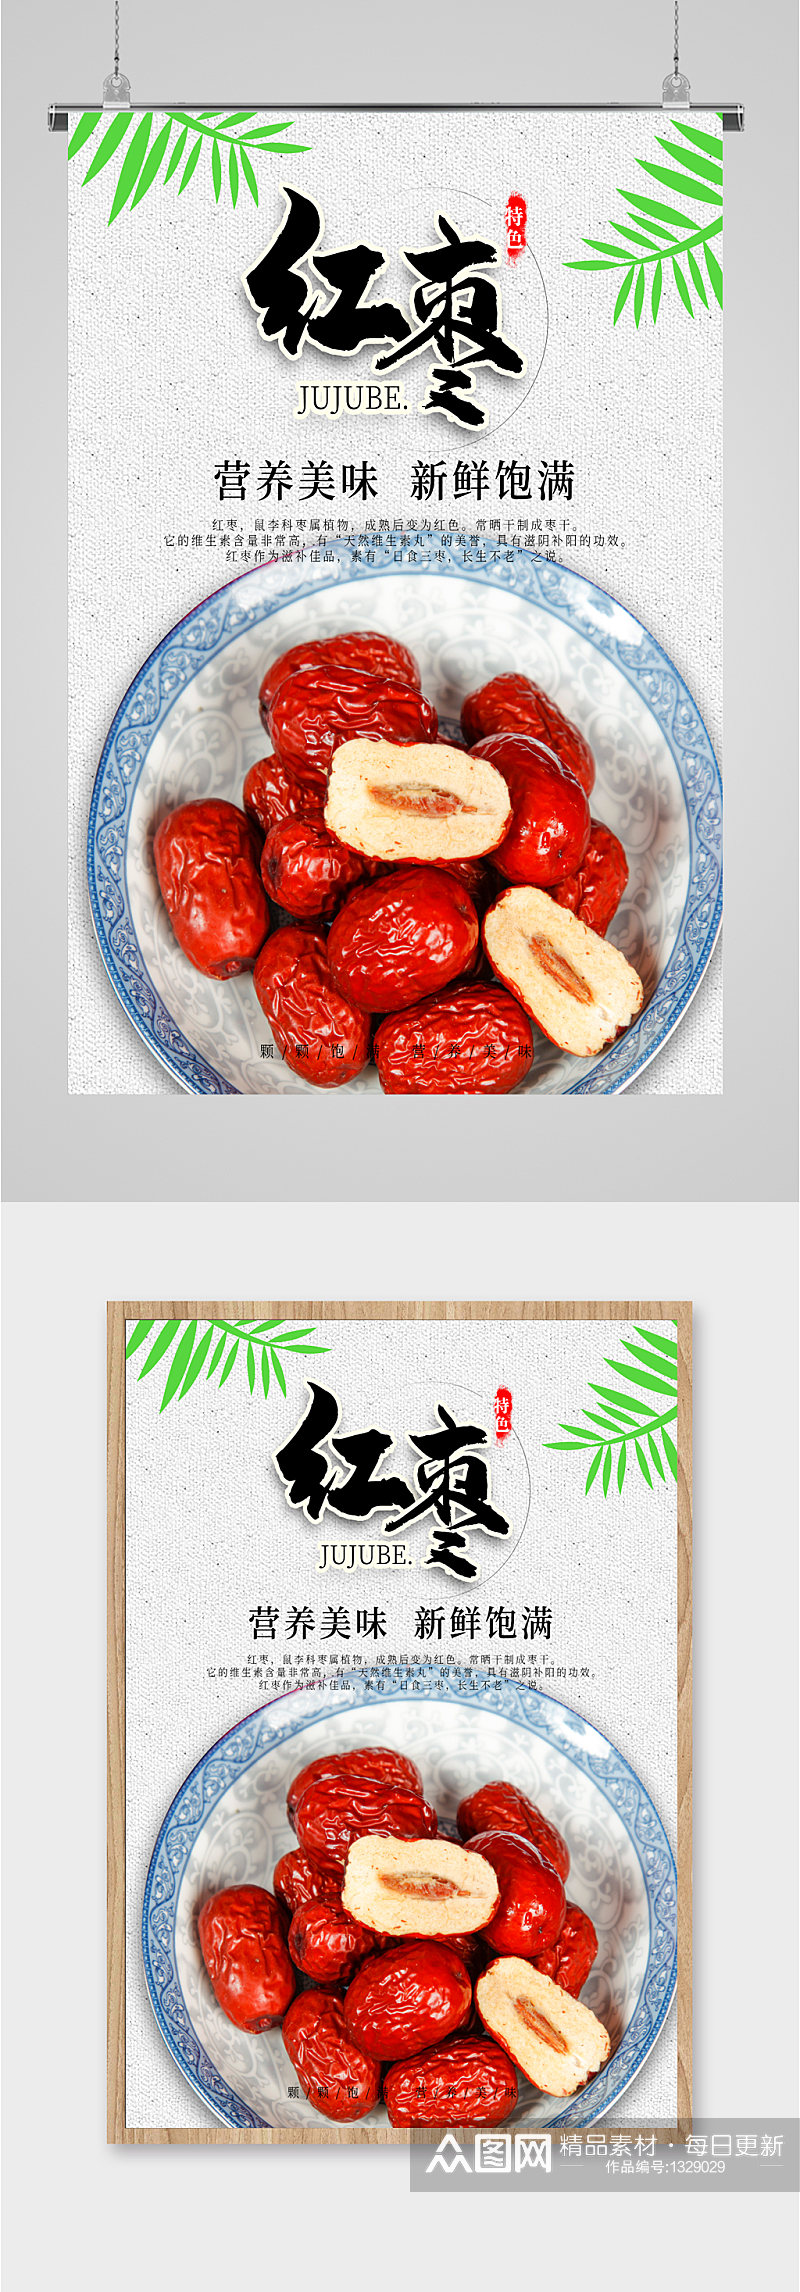 红枣养生食品海报素材